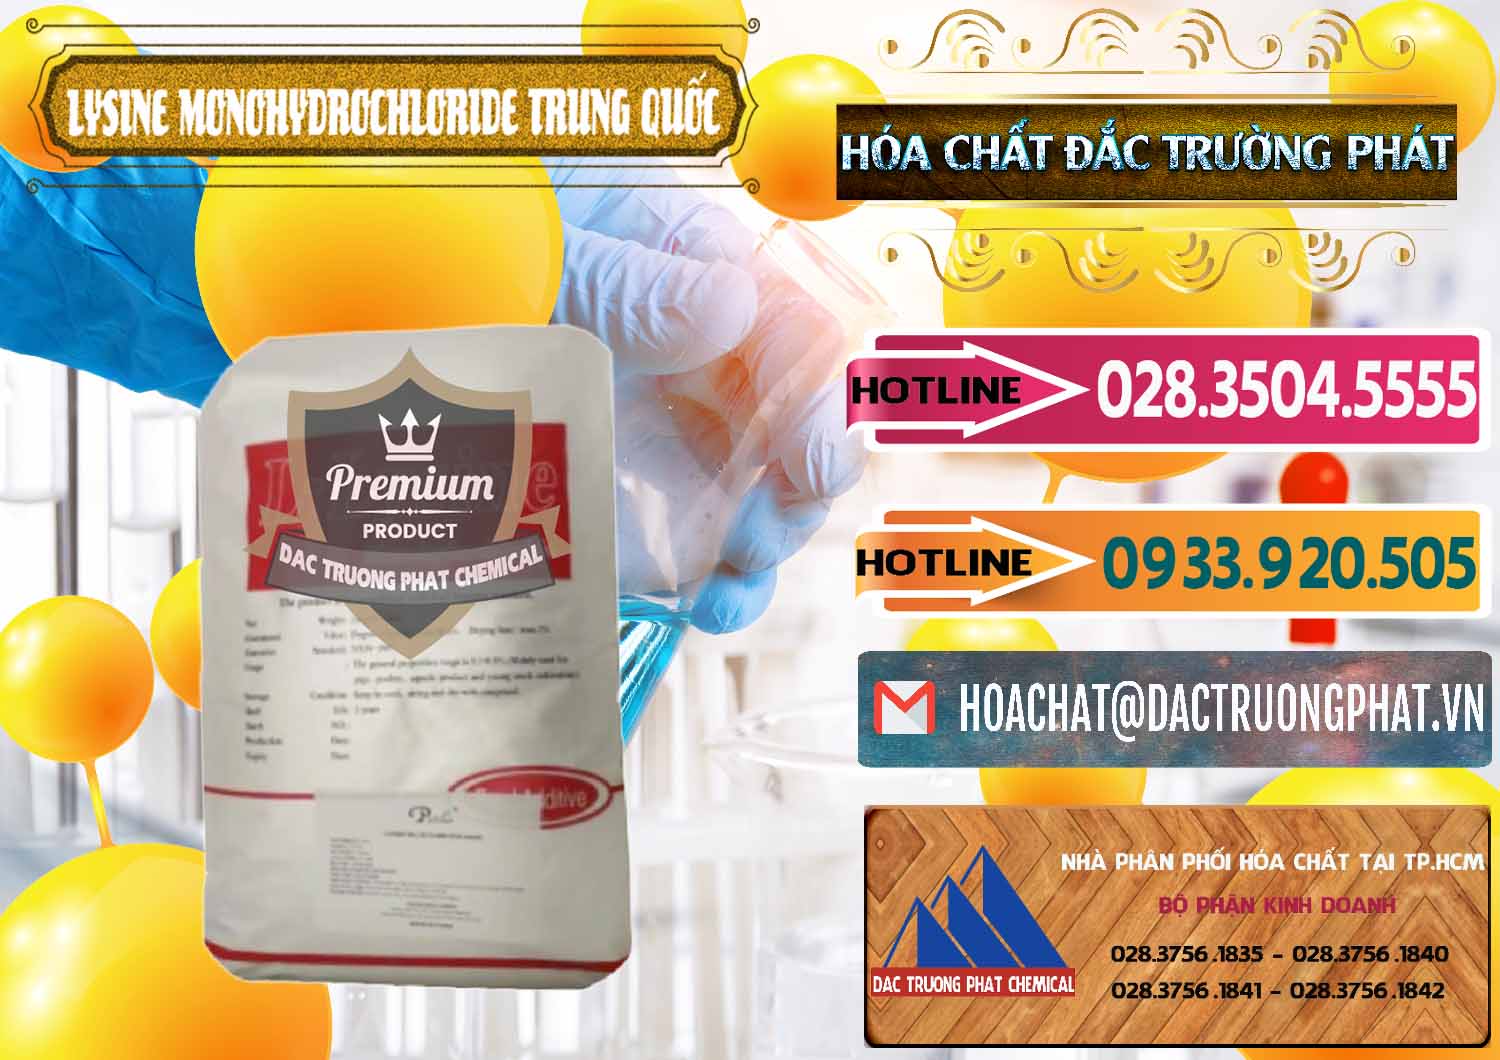 Nơi phân phối và bán L-Lysine Monohydrochloride Feed Grade Trung Quốc China - 0454 - Đơn vị chuyên cung ứng & phân phối hóa chất tại TP.HCM - dactruongphat.vn